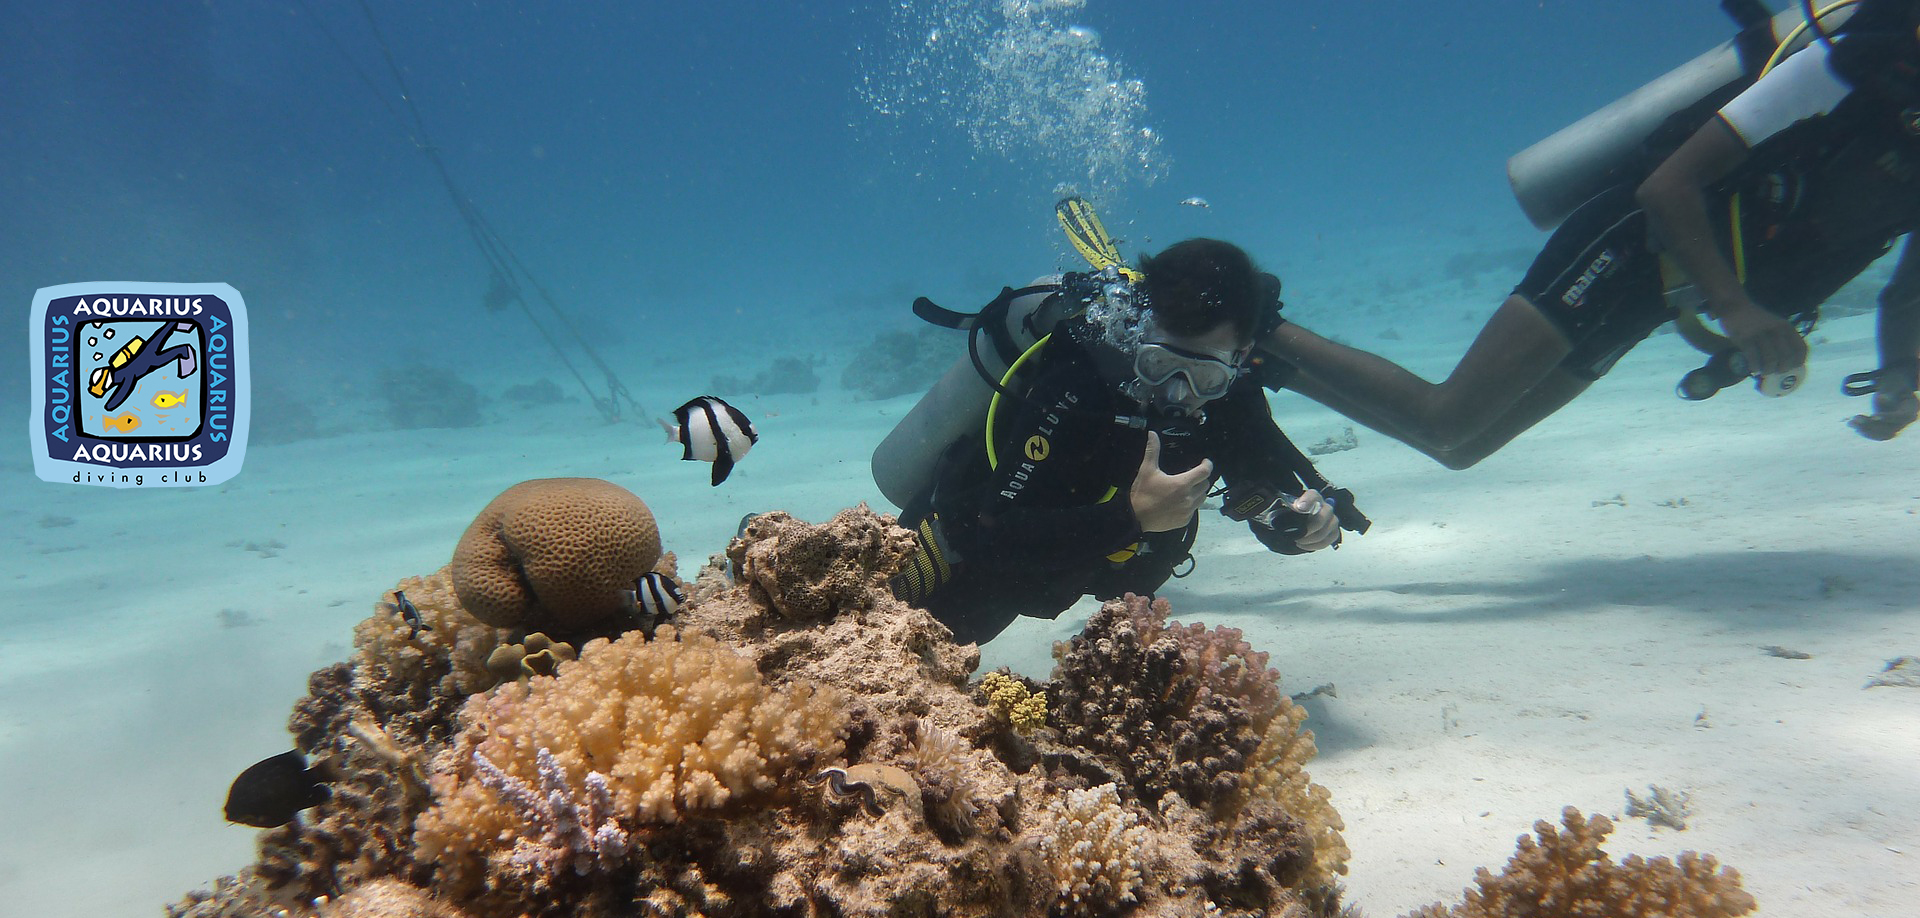 Taucher von Aquarius Diving Club an einem Korallenriff im Roten Meer